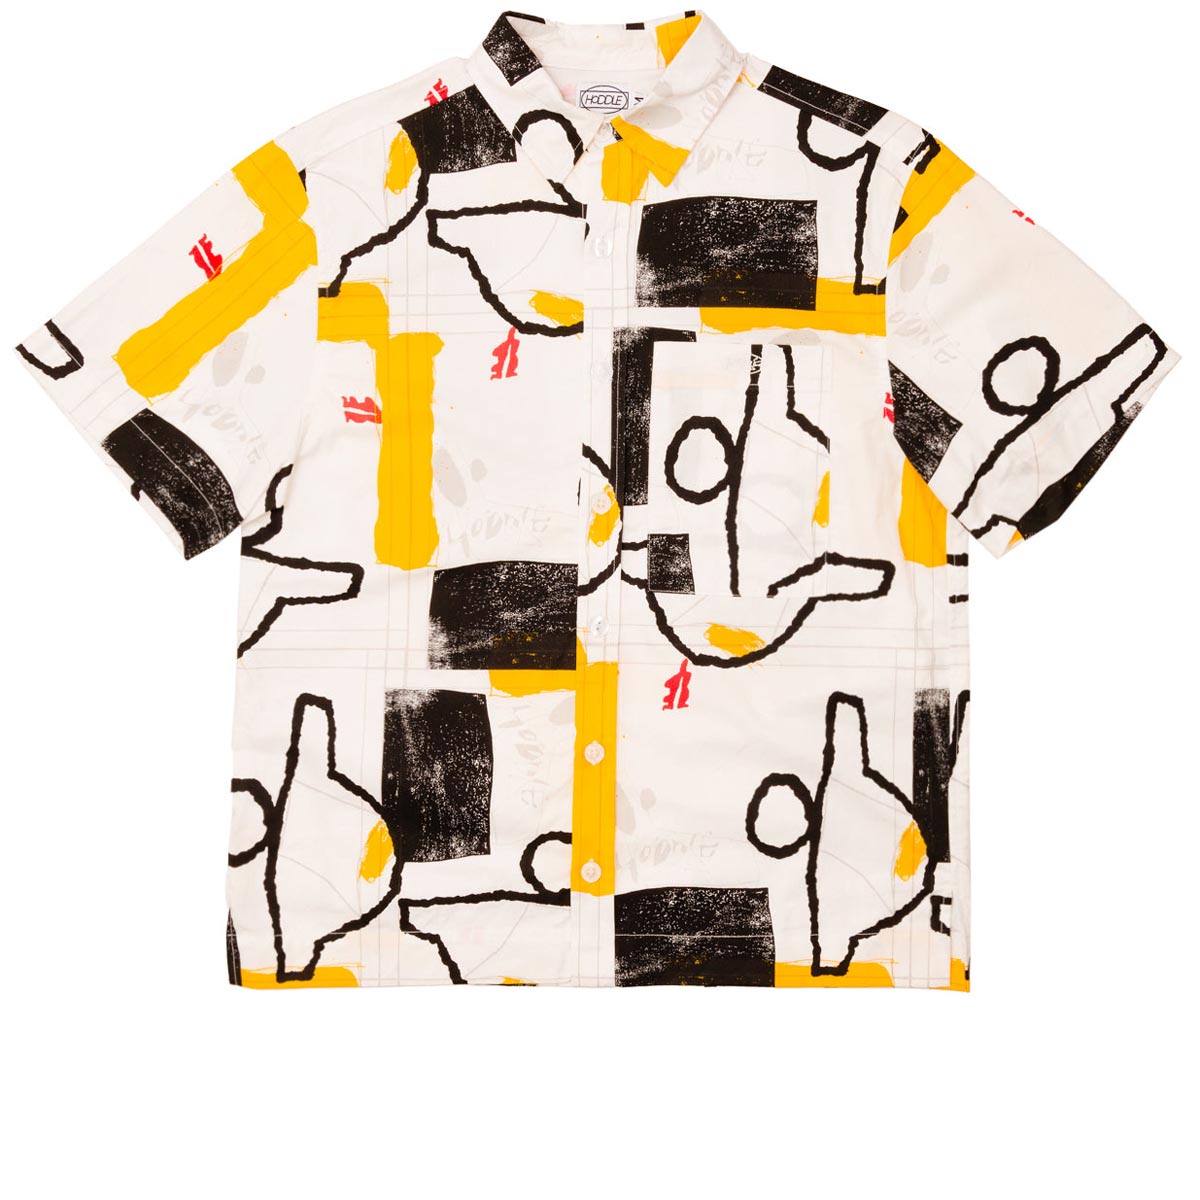 Hoddle Faire Shirt - Yellow/Black/White image 1